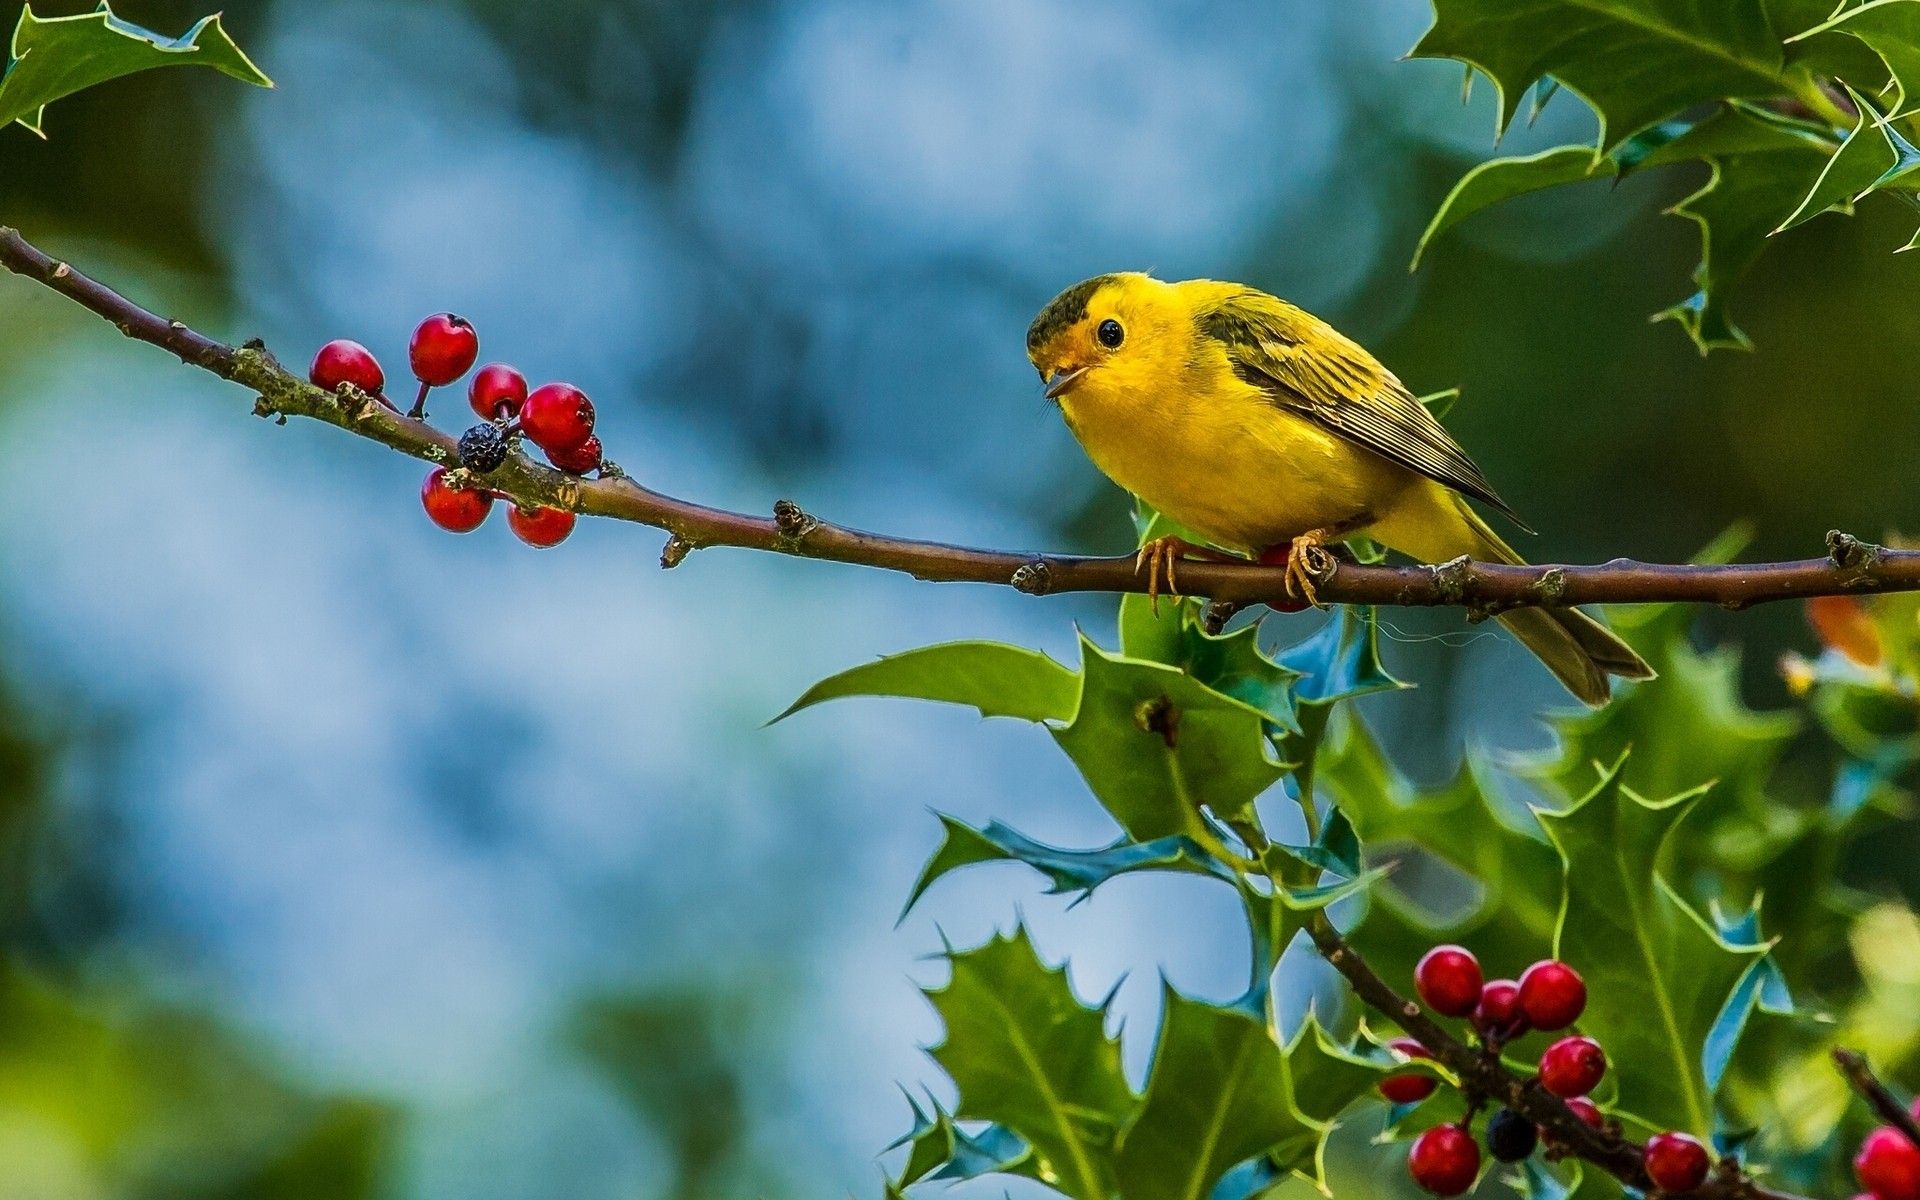 Cute Little Yellow Bird